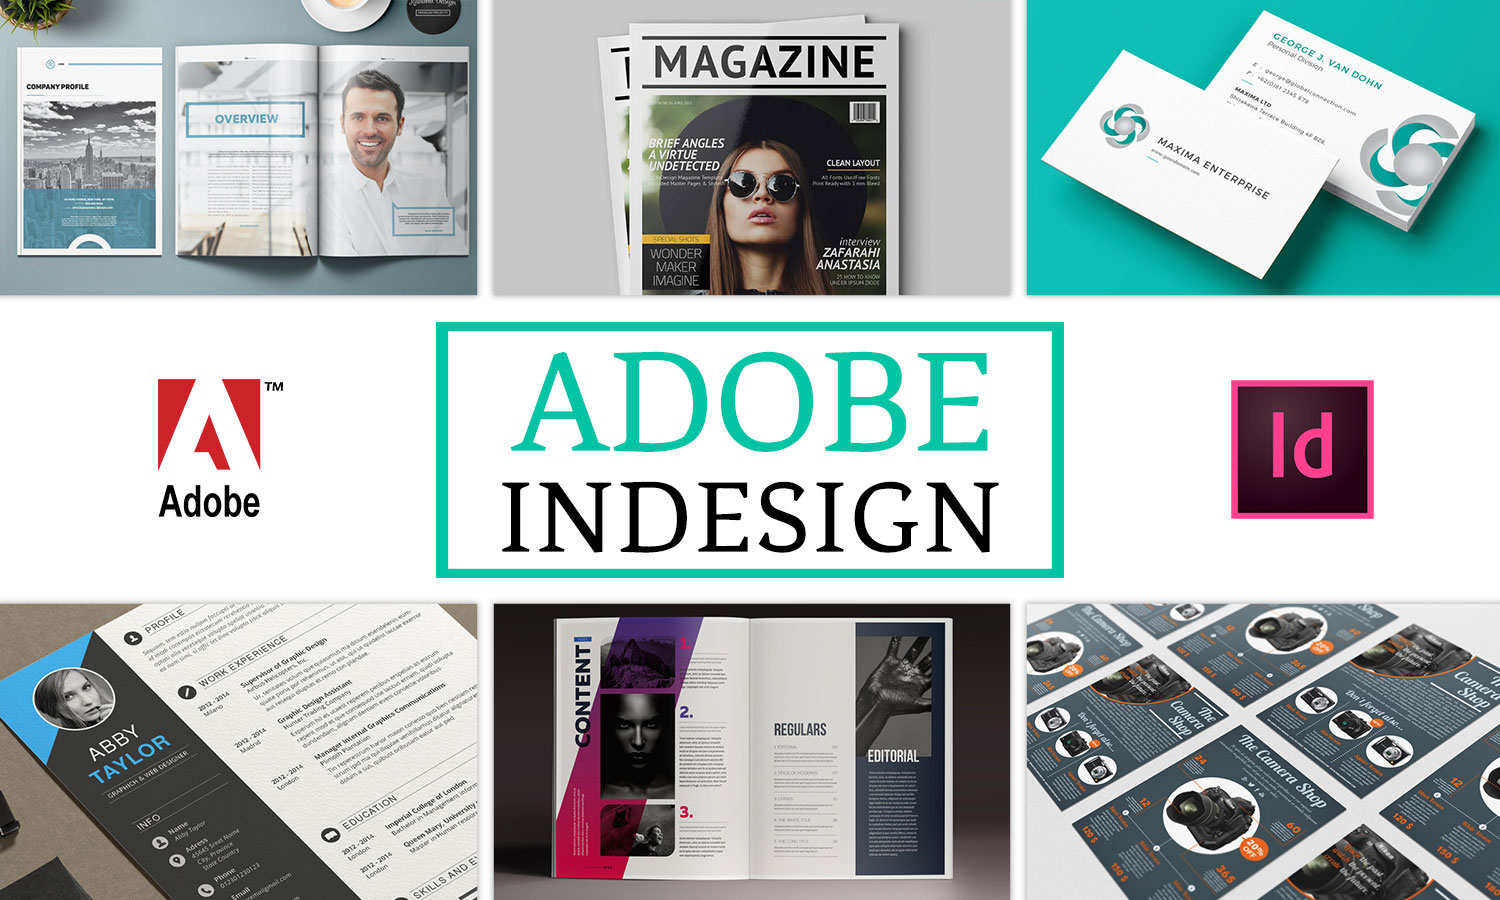 Adobe InDesign tạo ra những trang bố cục chuyên nghiệp và sáng tạo